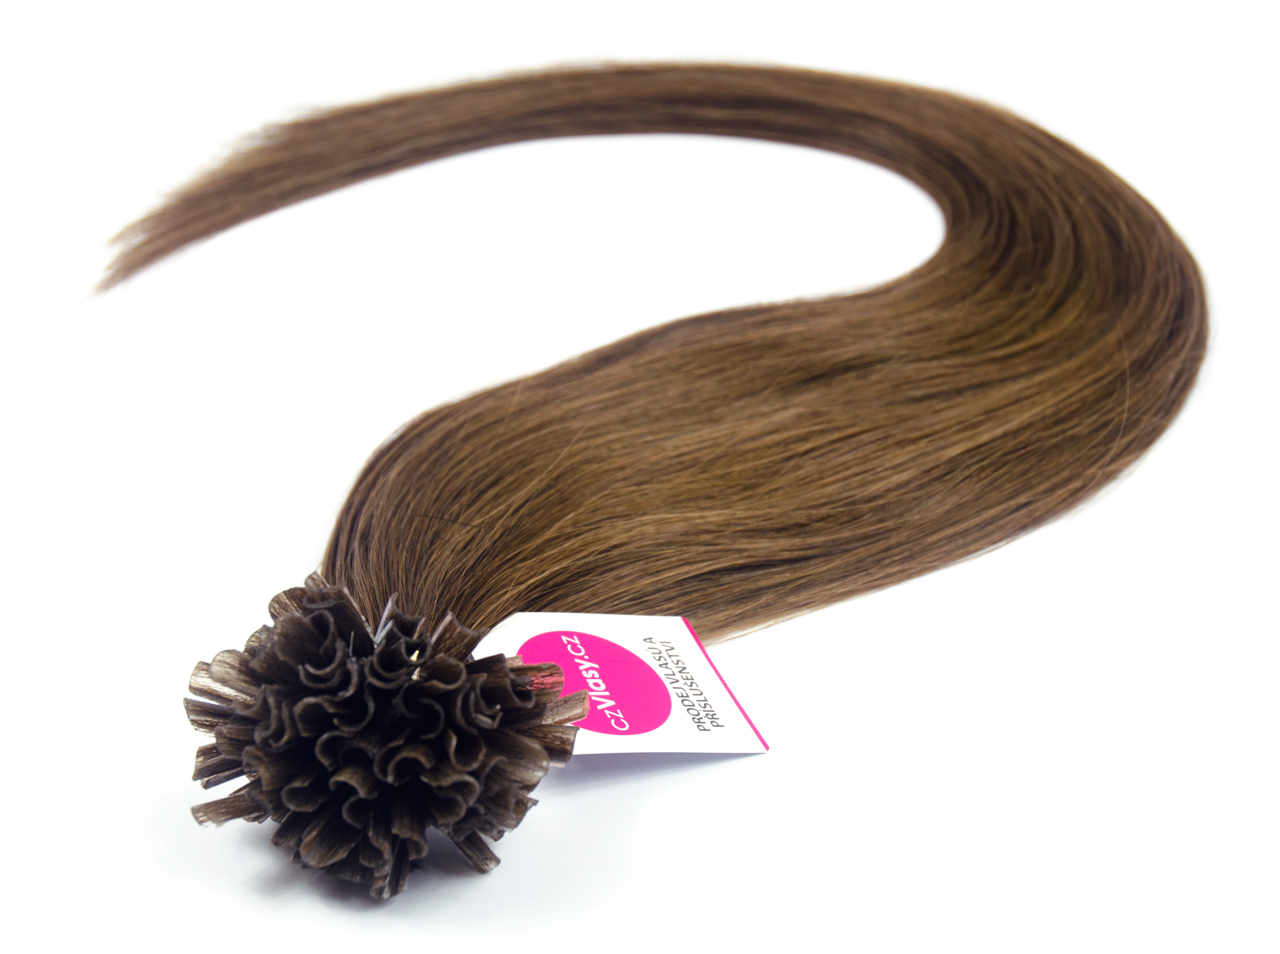 Asijské vlasy na metodu keratin odstín 4 Délka: 46 cm, Hmotnost: 0,5 g/pramínek, REMY kvalita